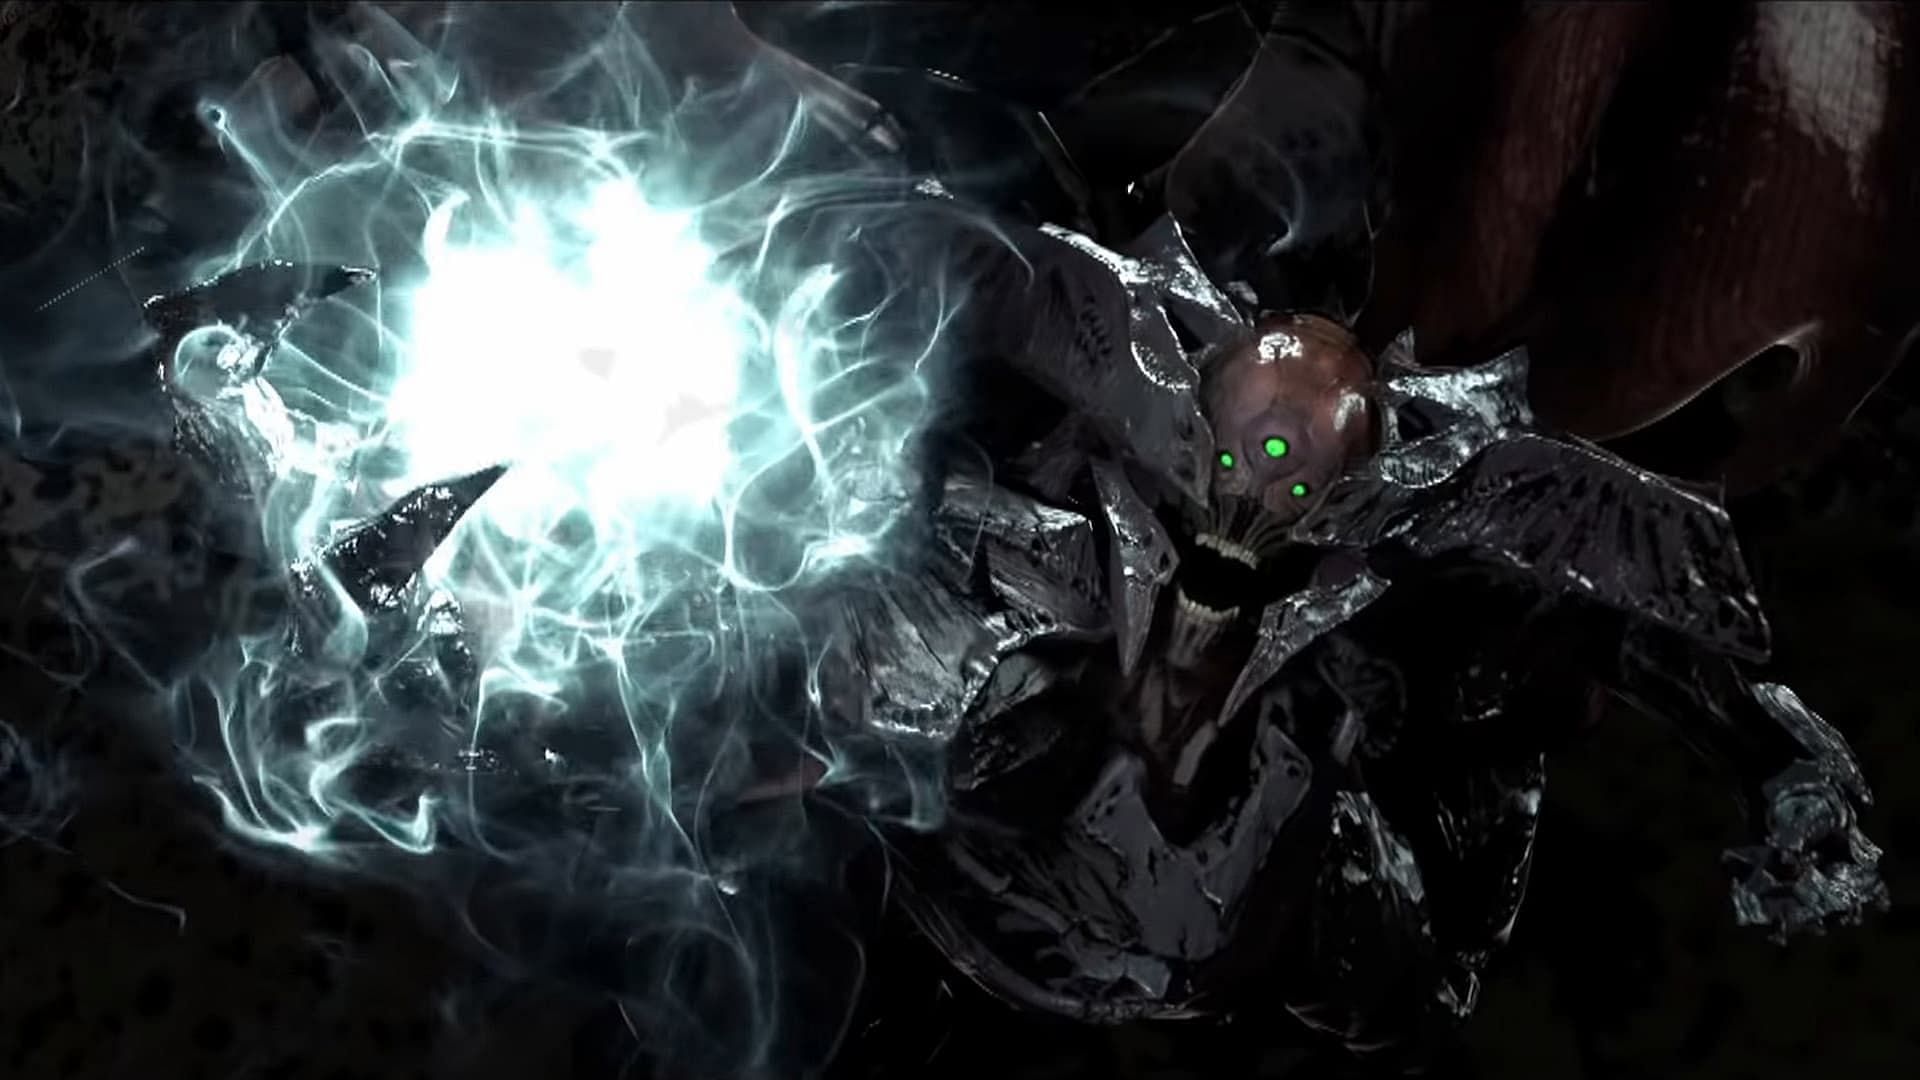 Destiny 2 King's Fall Raid: Oryx encounter Guide - TechiAzi